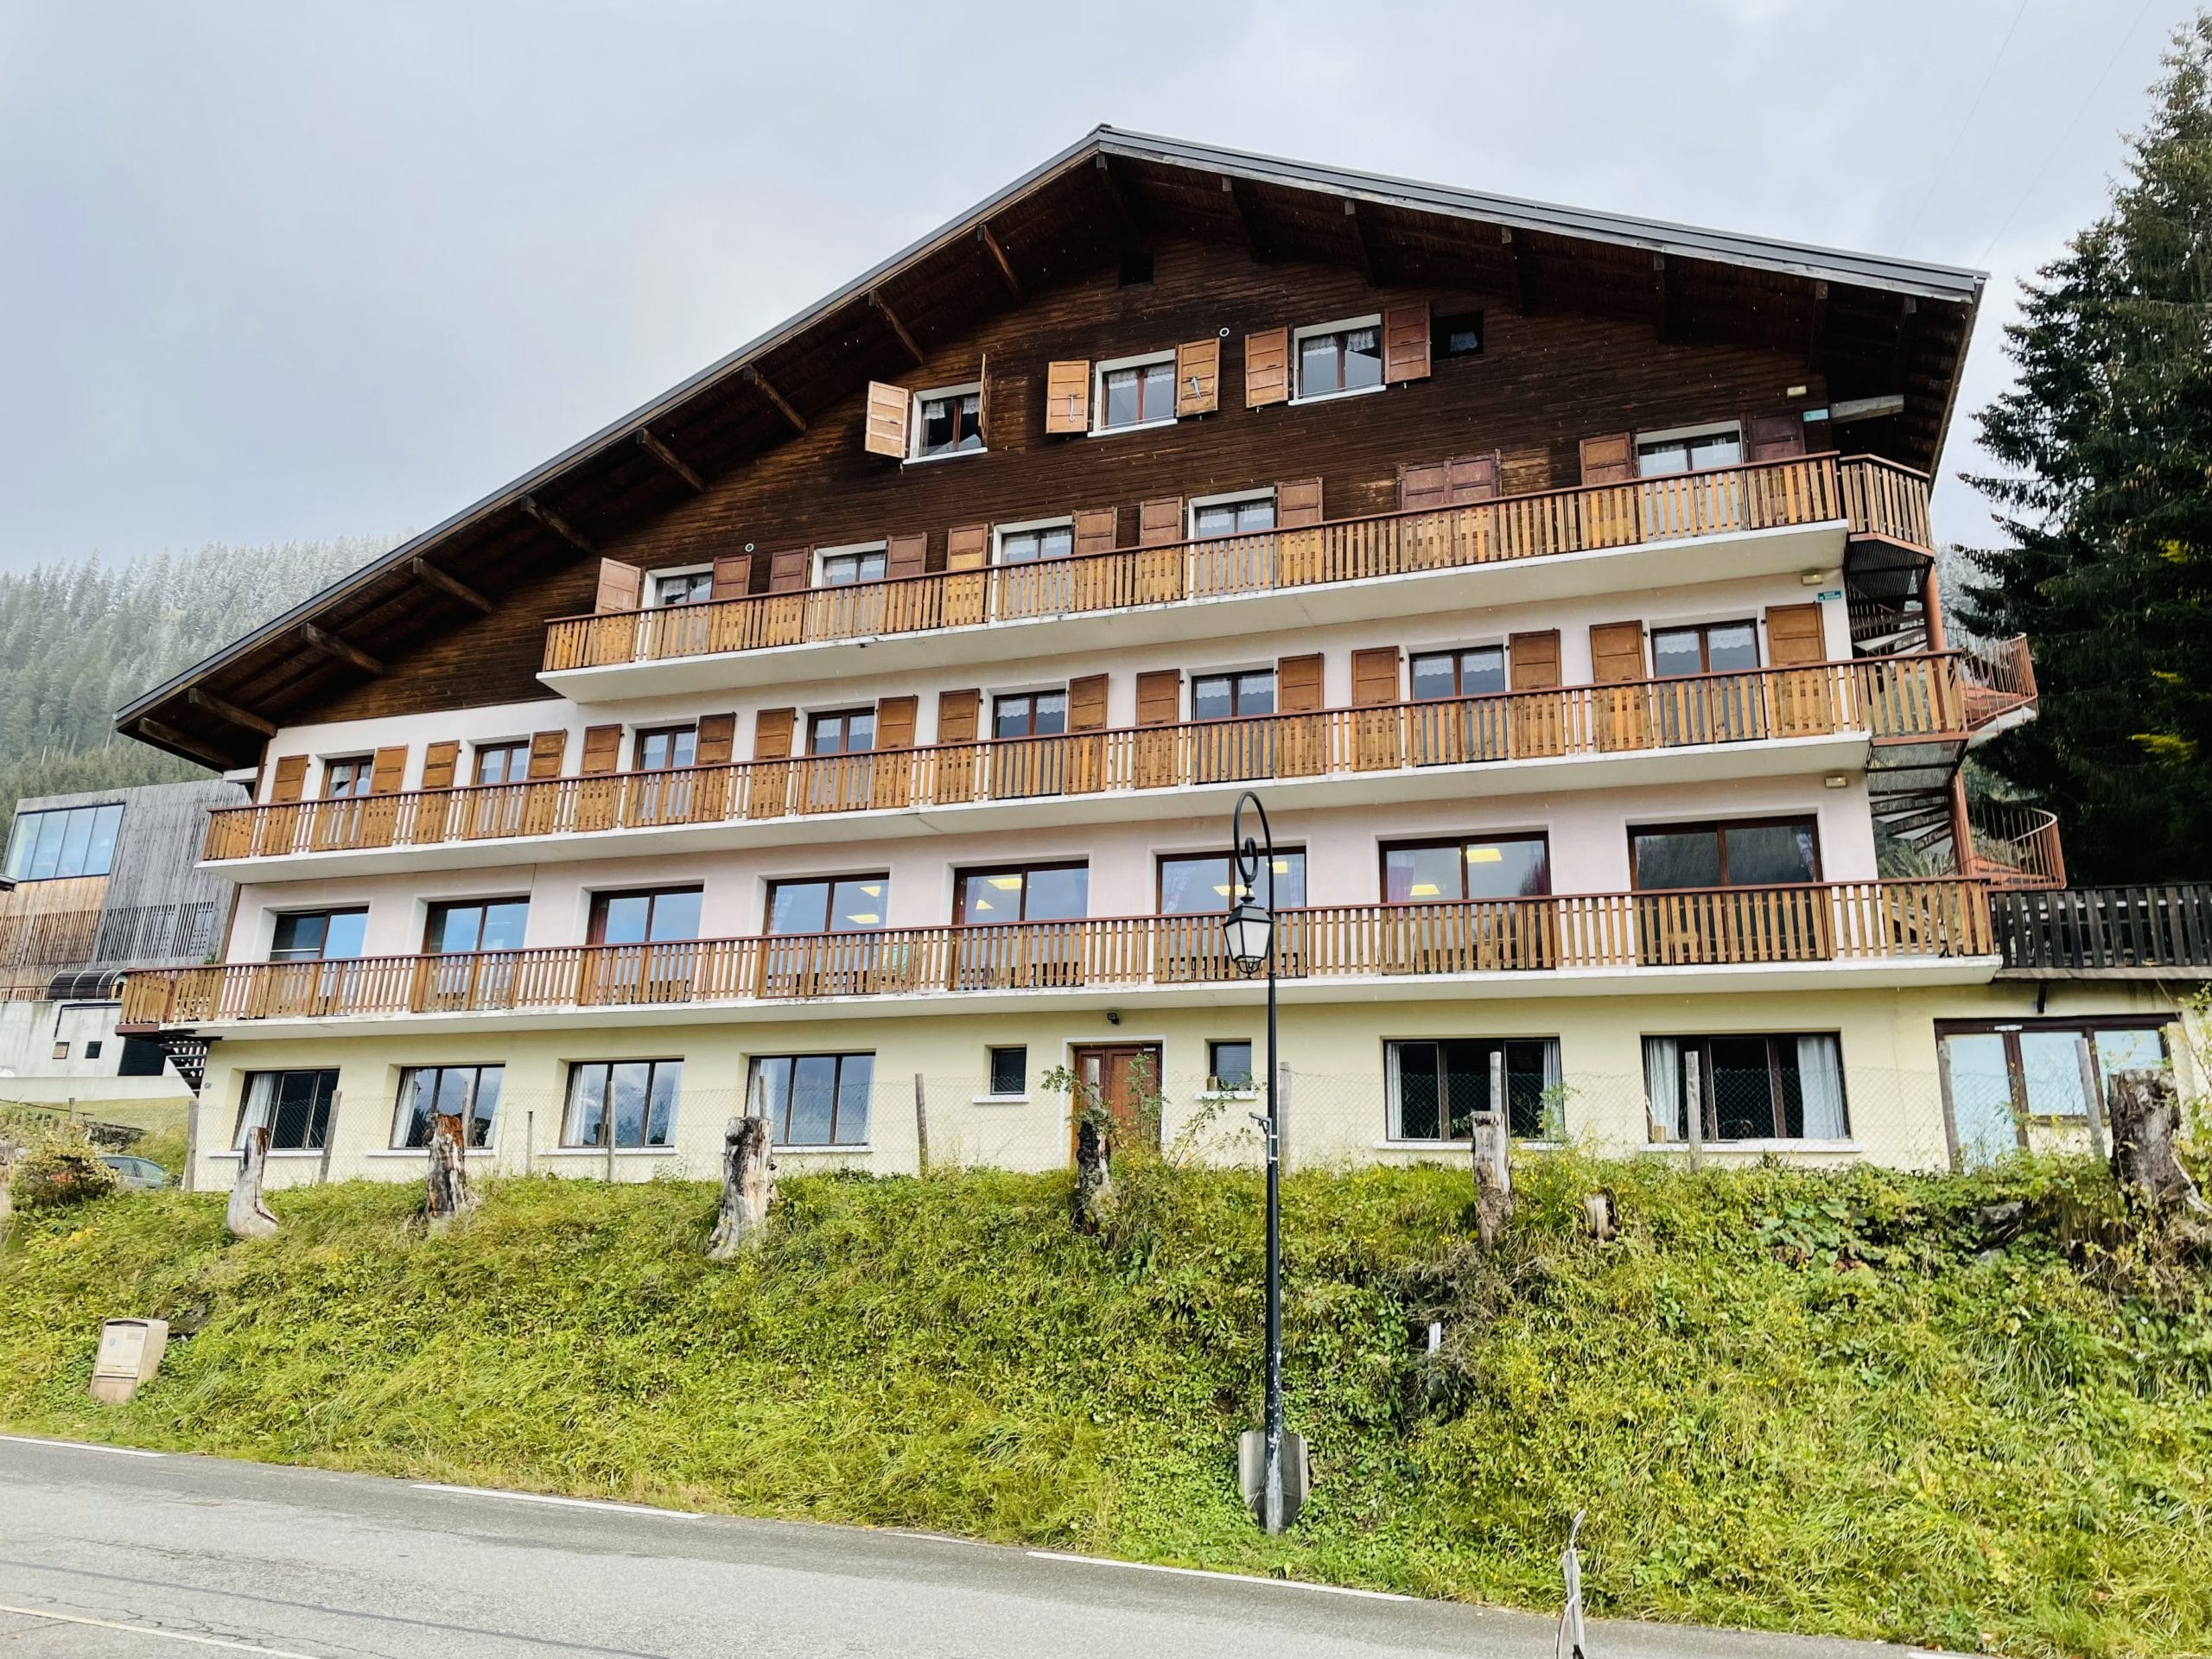 Centre de vacances édifiée sur 5 niveaux à Châtel en Haute-Savoie